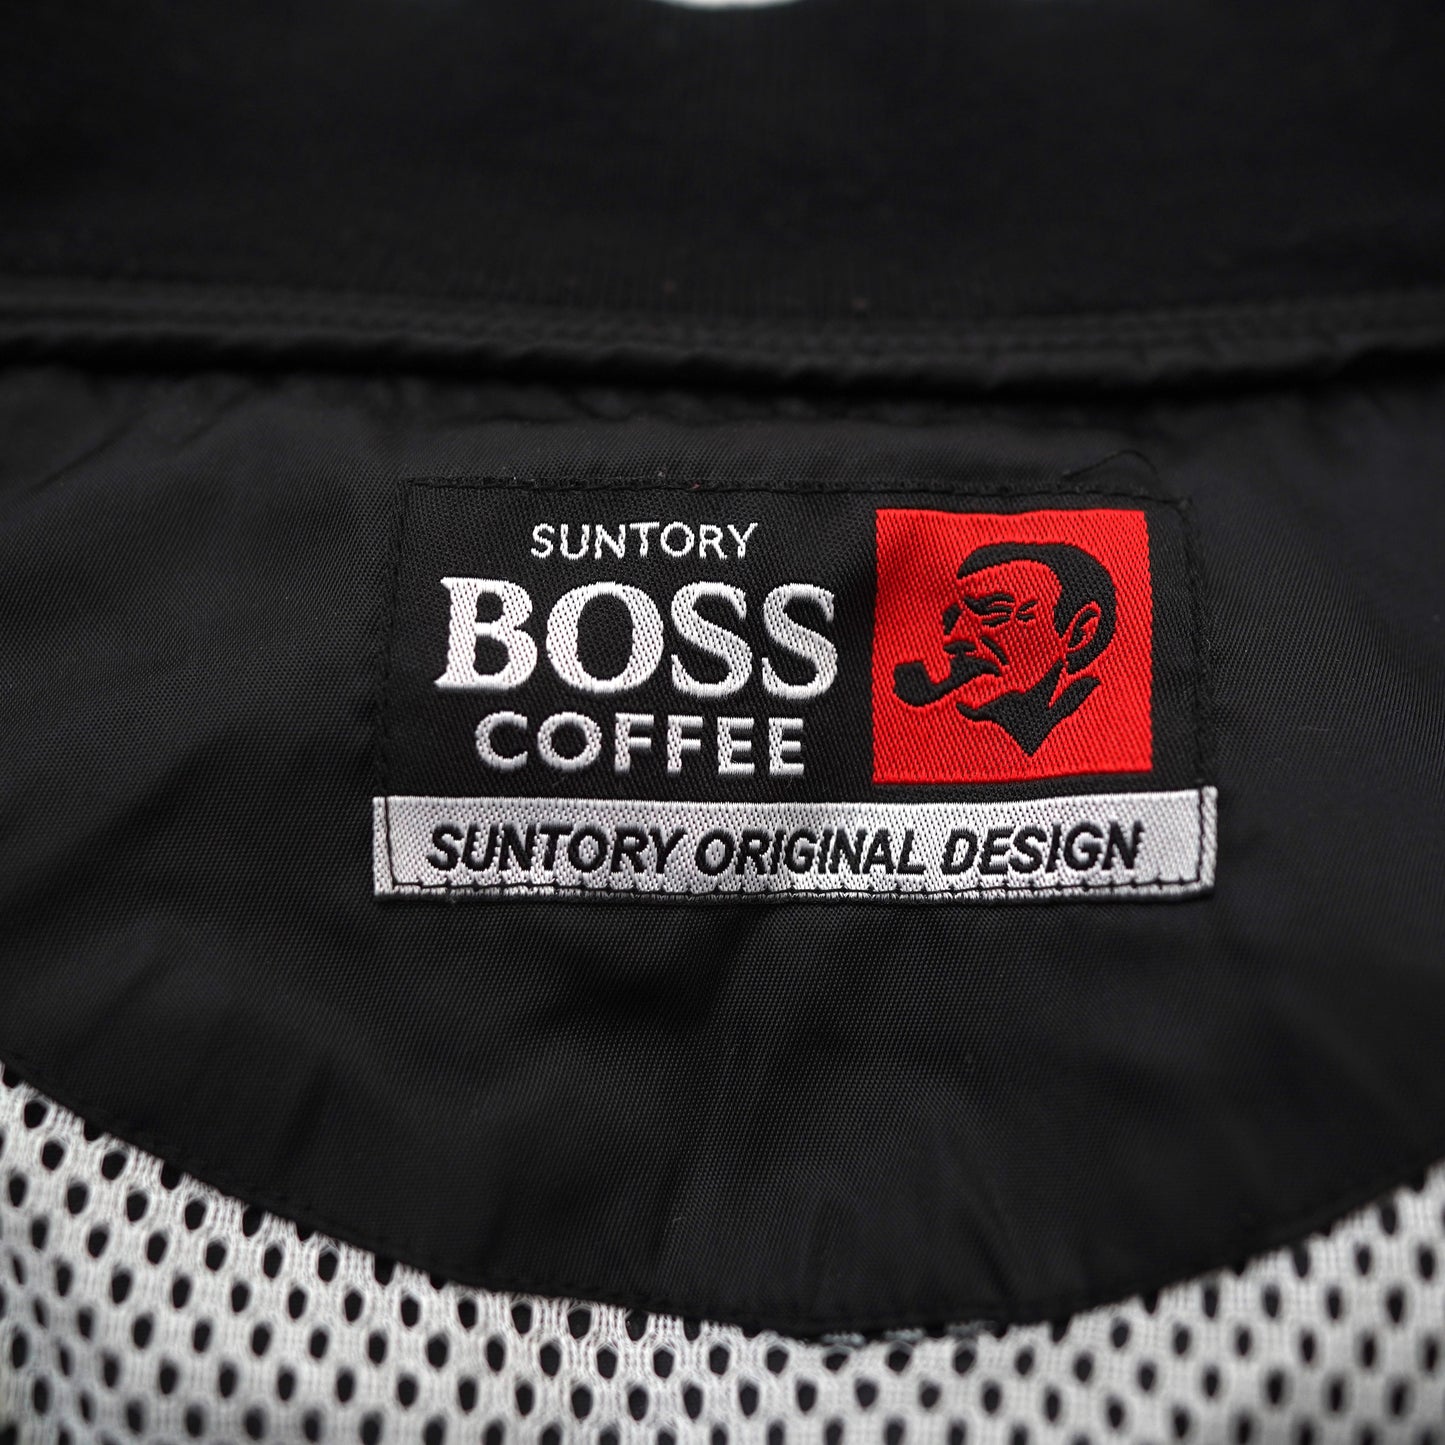 SUNTORY BOSS COFFEE blouson